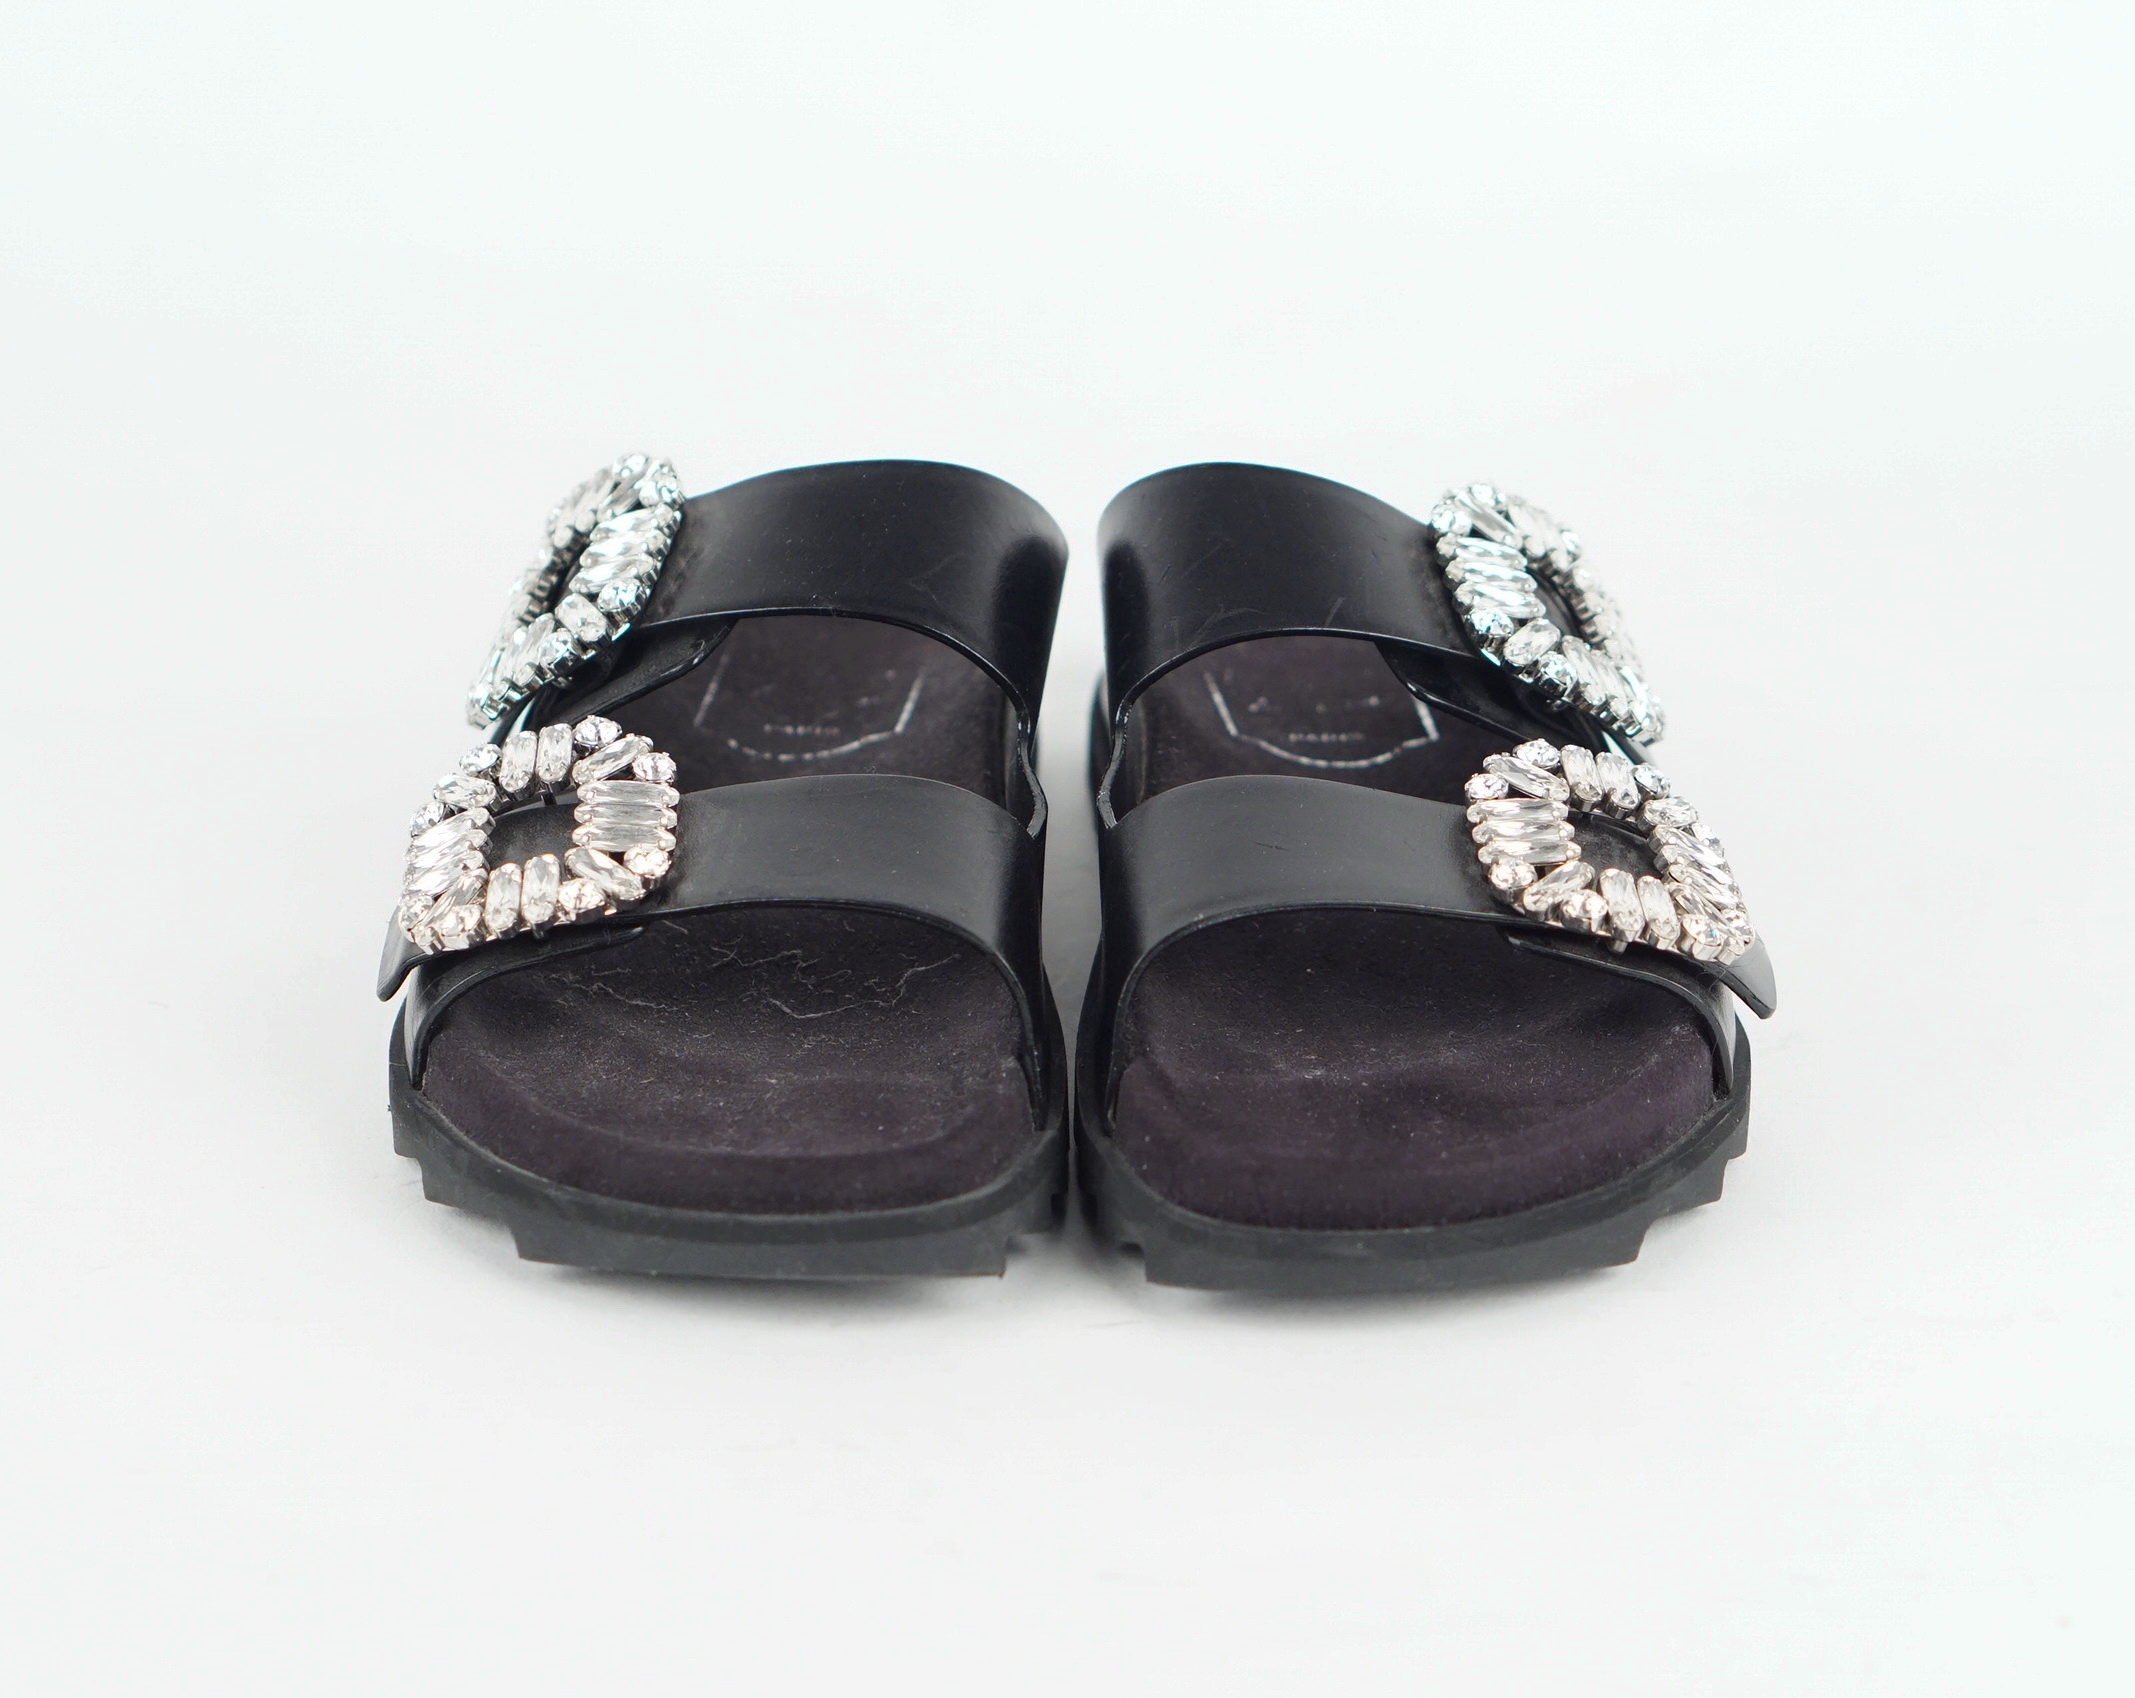 Slidy Viv' Strass Crystal-Embellished Leather Sliders 